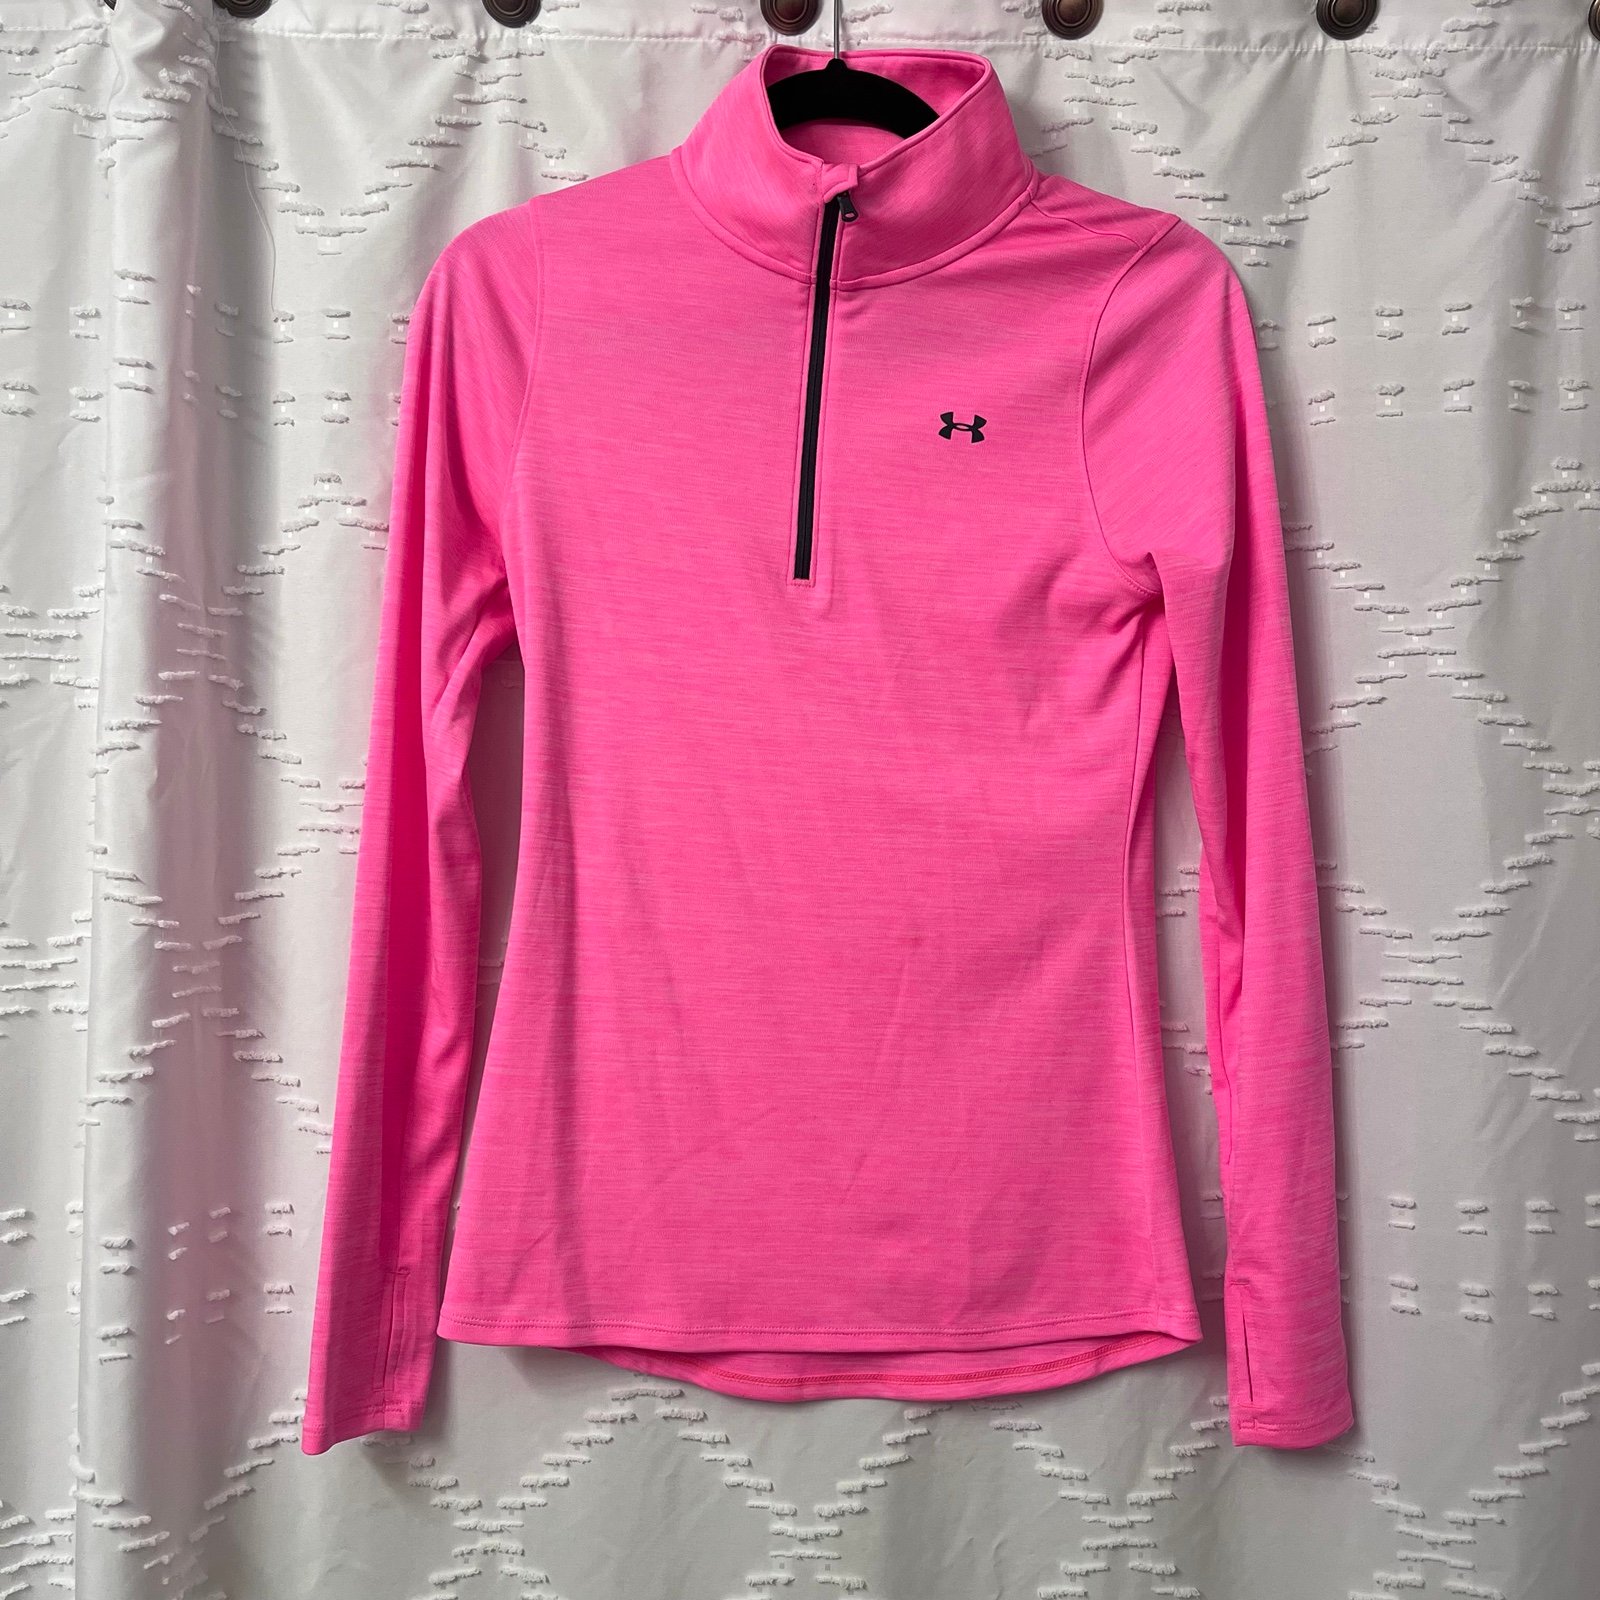 Amazing Pink Underarmour Athletic Jacket pBe3S3SFl US O